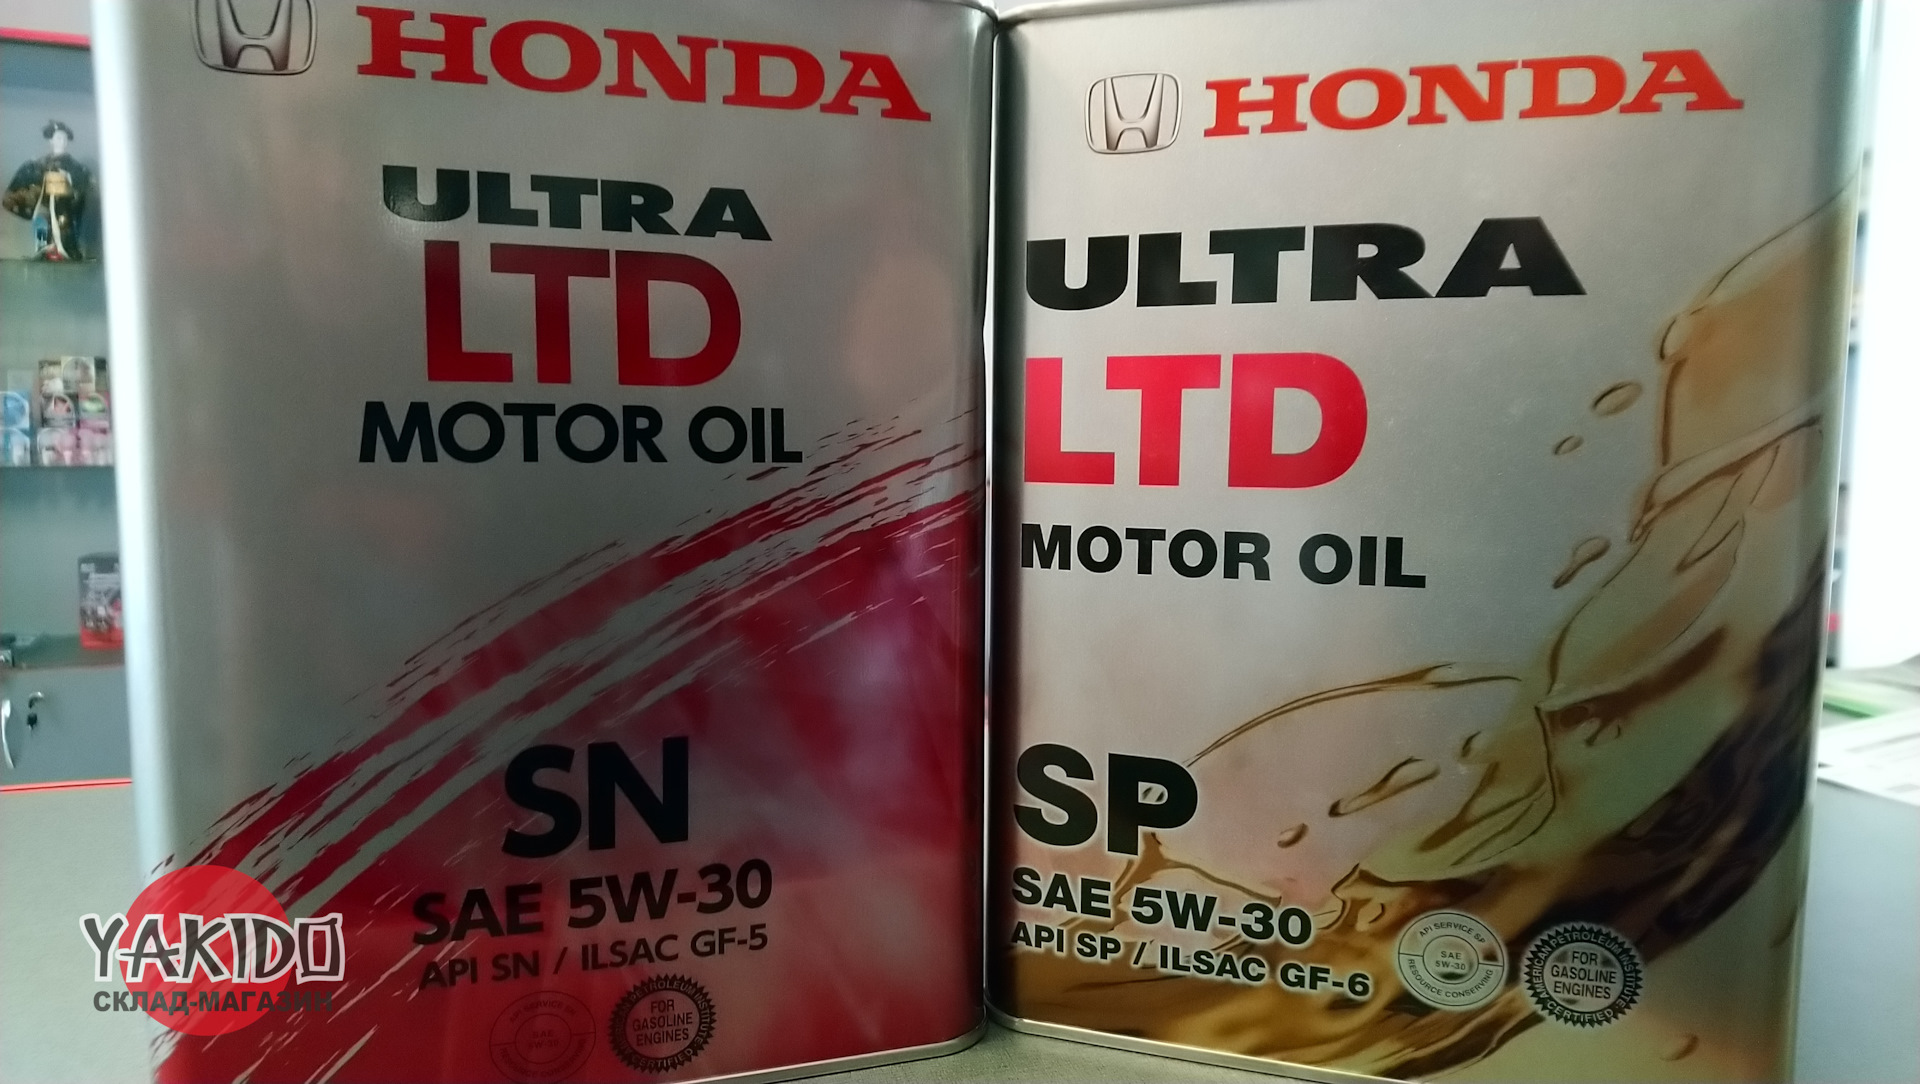 Масло хонда оригинал 5w30. Масло Honda 5w30 SP. Honda Ultra Ltd 5w30 SP/gf-6a 4л. Honda Ultra Ltd SP/gf-6 5w30 4л жесть. Масло Honda 5w30 SP 1л.